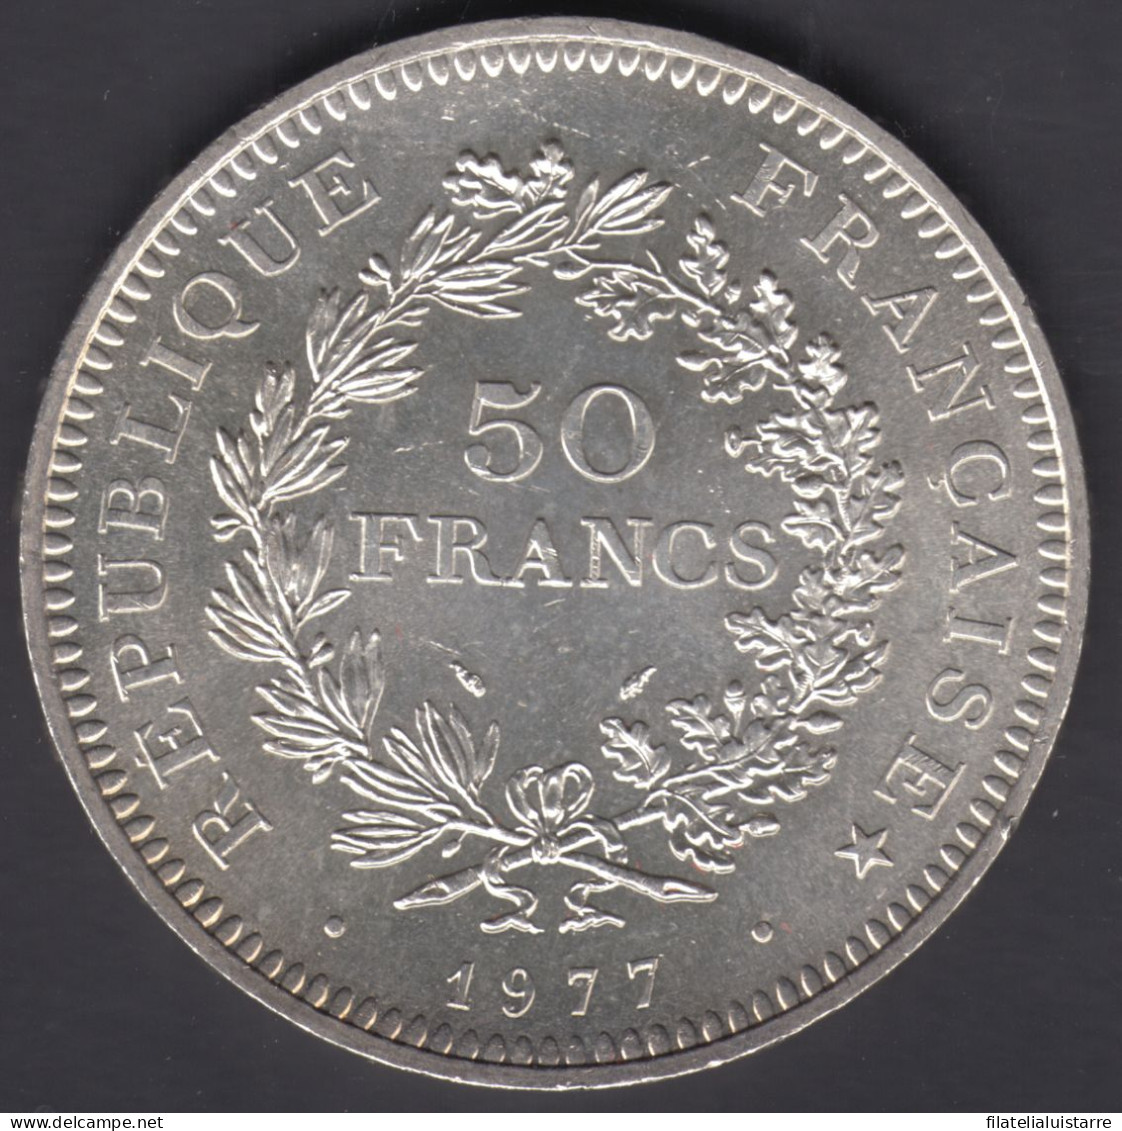 MONEDA FRANCIA - 50 FRANCOS 1977 - PLATA 30 Gr. - 50 Francs